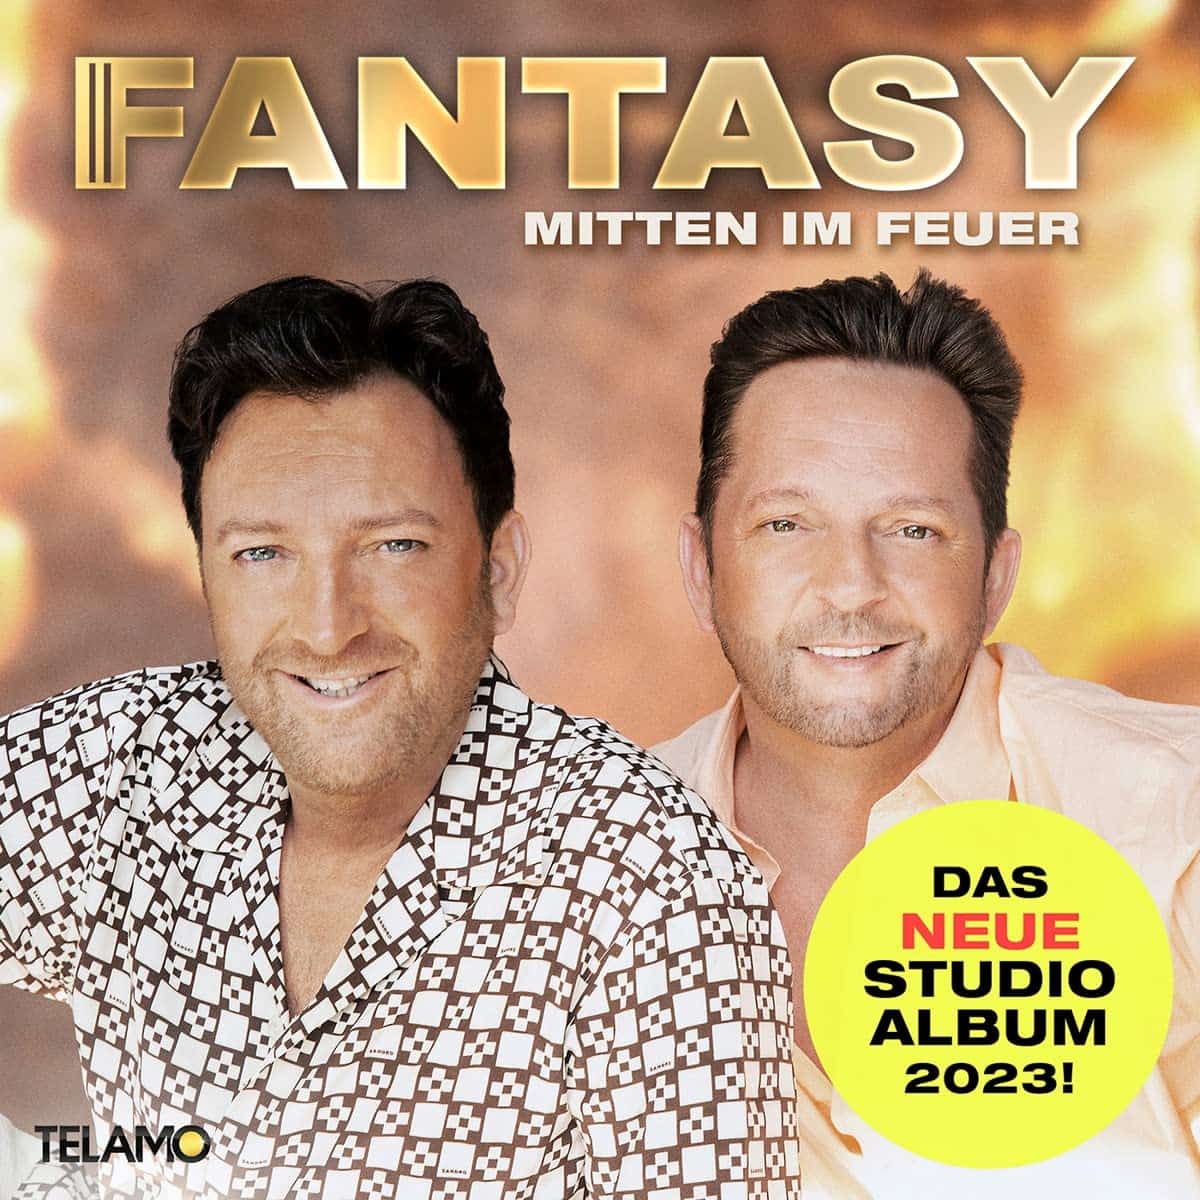 Fantasy-CD 2023 “Mitten im Feuer”